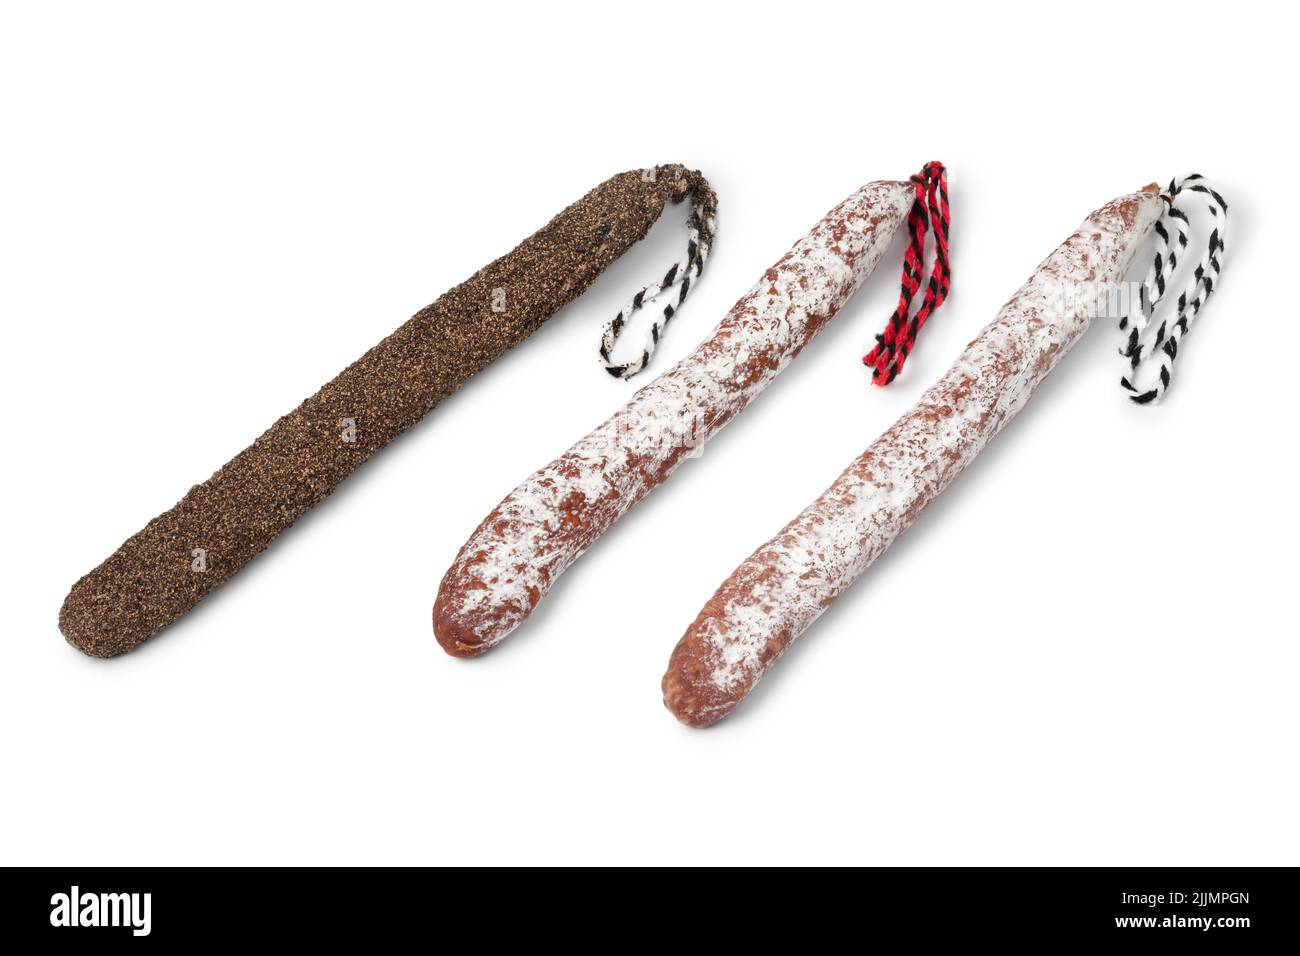 Variazione di tre salsiccia catalana tradizionale, chiamato fuet isolato su sfondo bianco Foto Stock